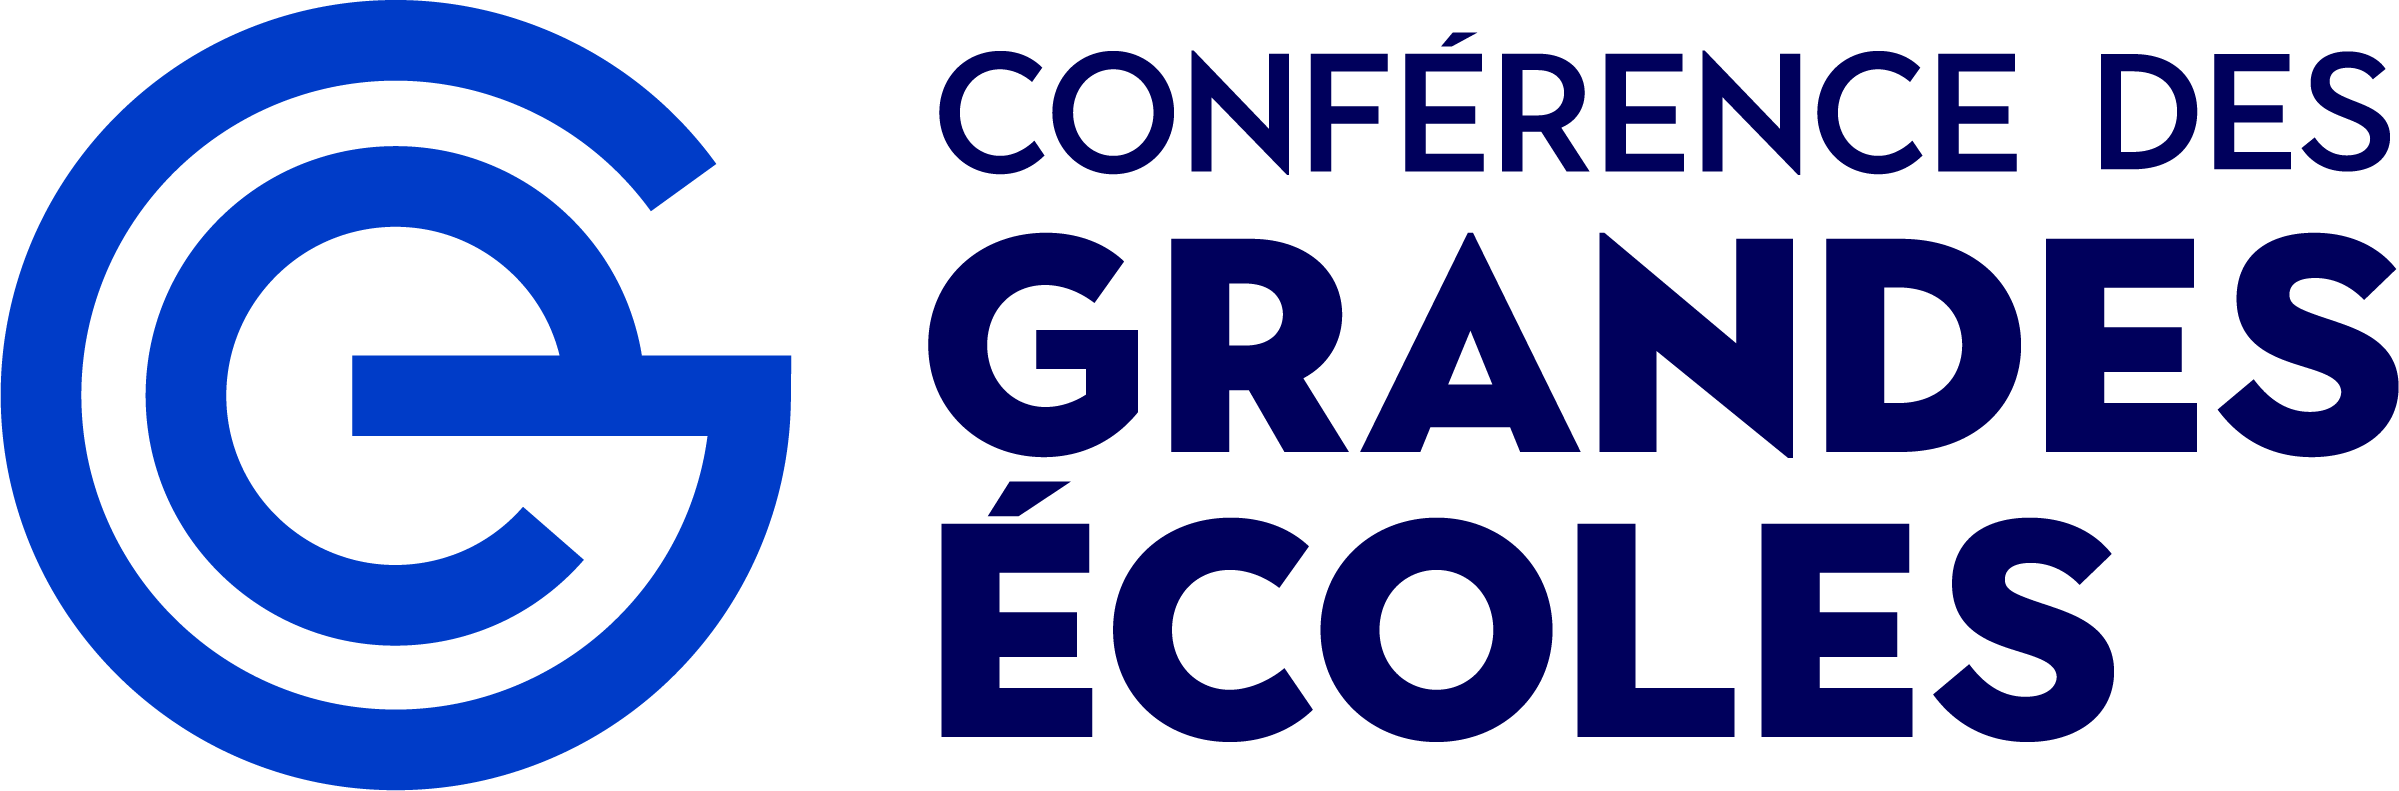 Logo Cge - Conférence Des Grandes Écoles Logo Clipart (2399x791), Png Download